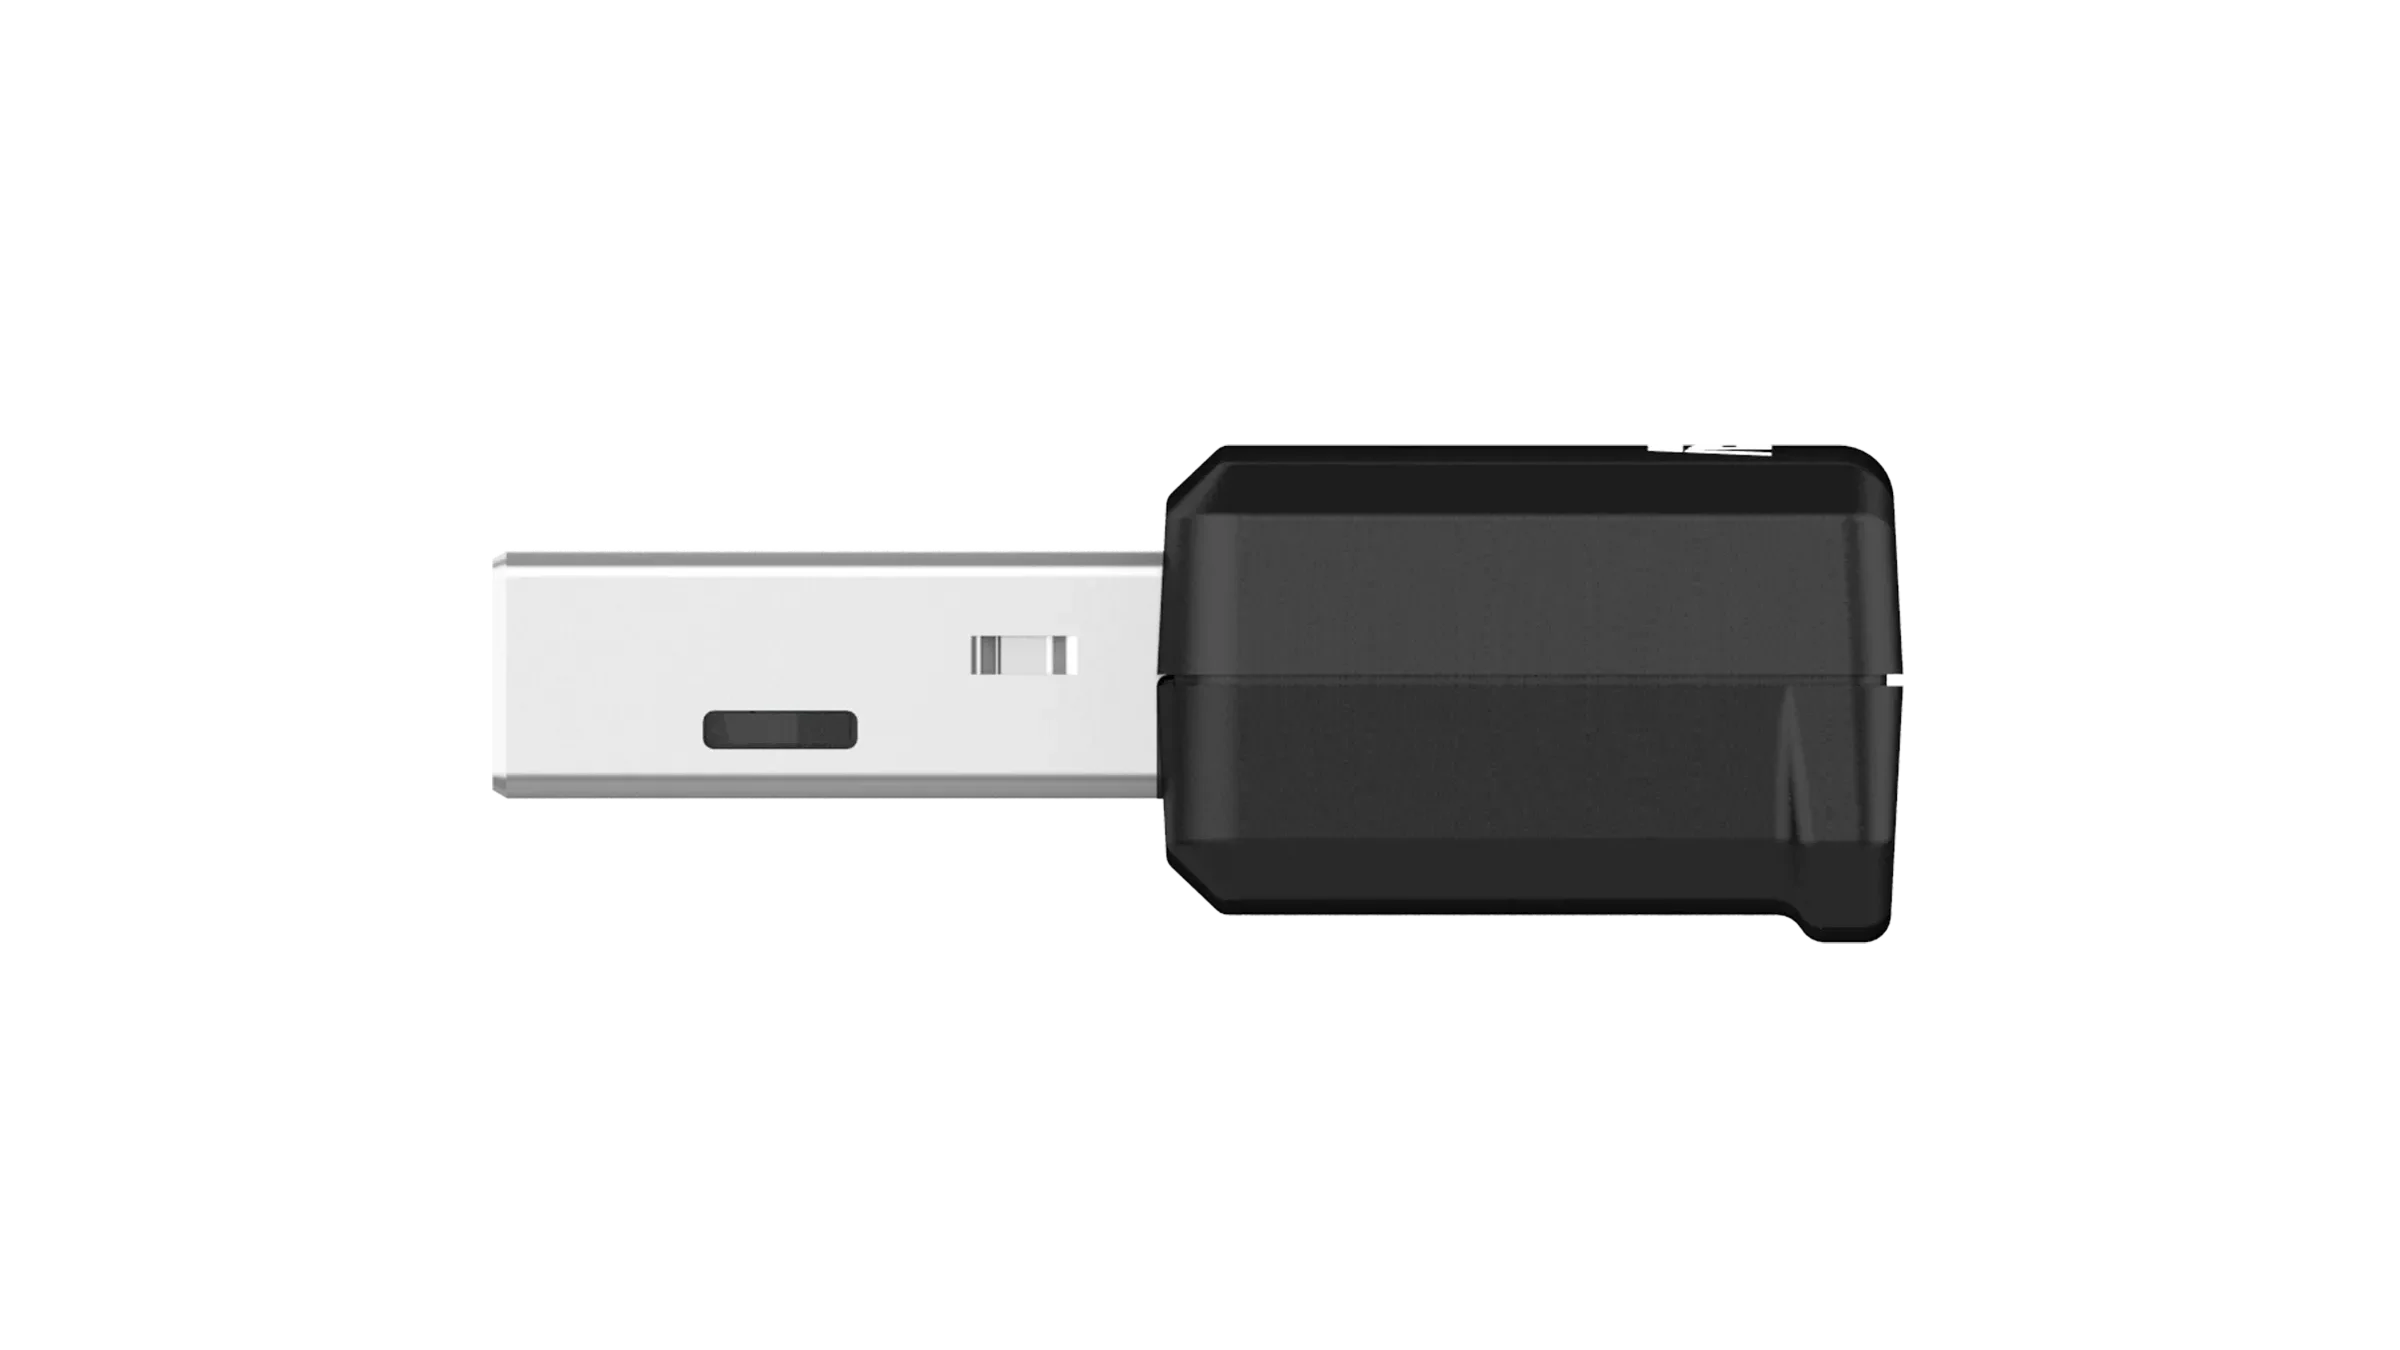 ASUS USB-AX55 Nano Side View